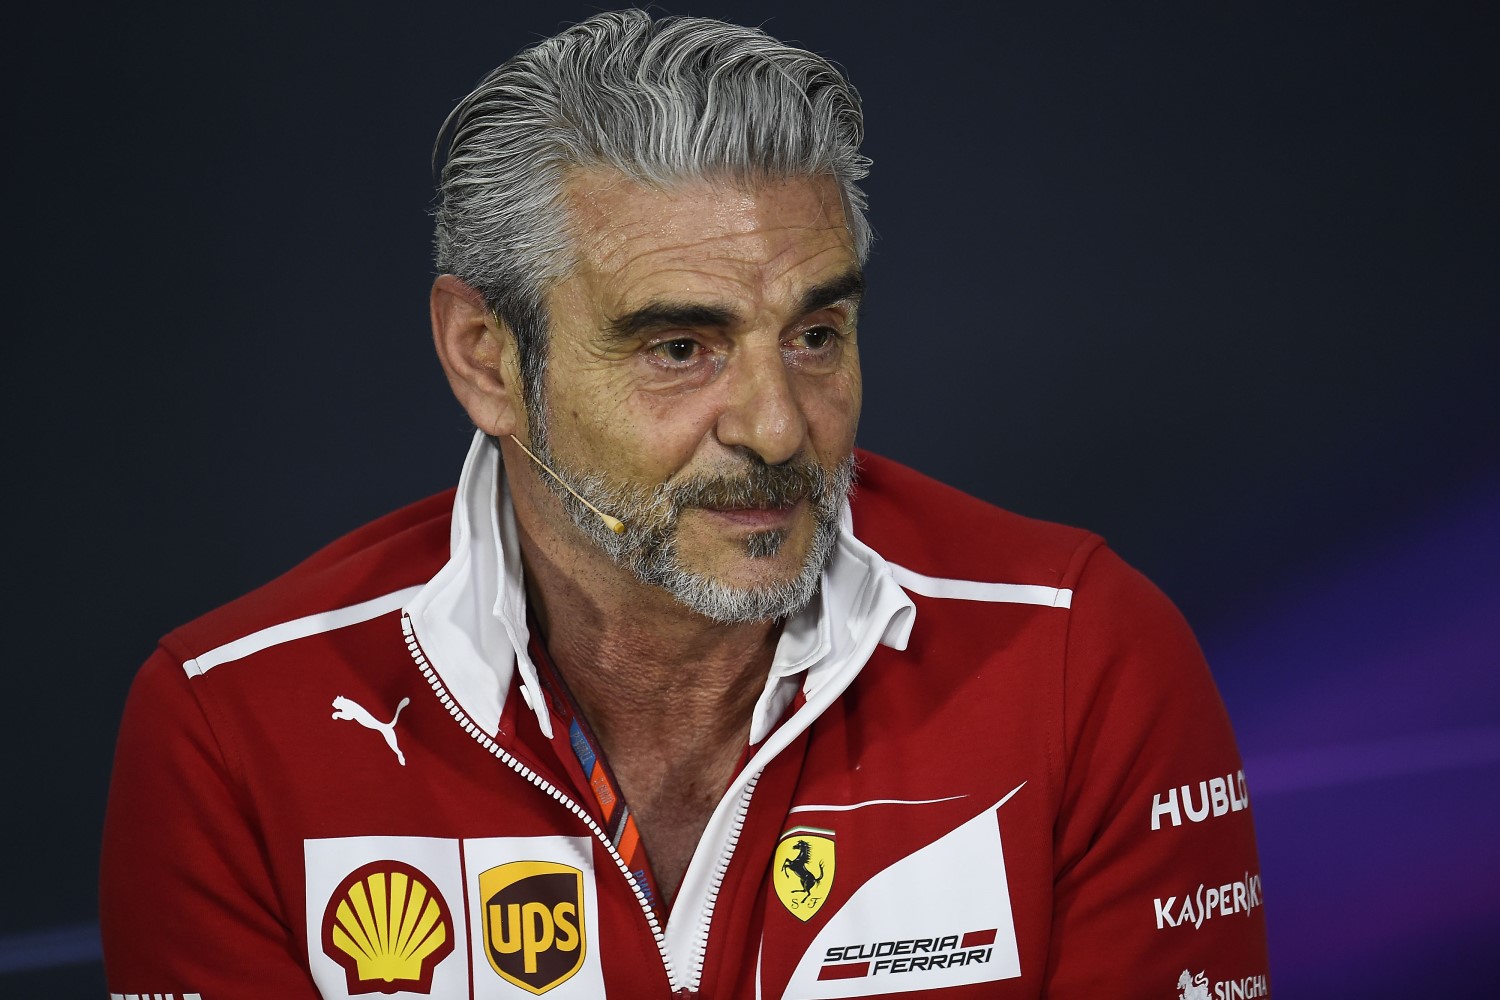 Ferrari boss Arrivabene